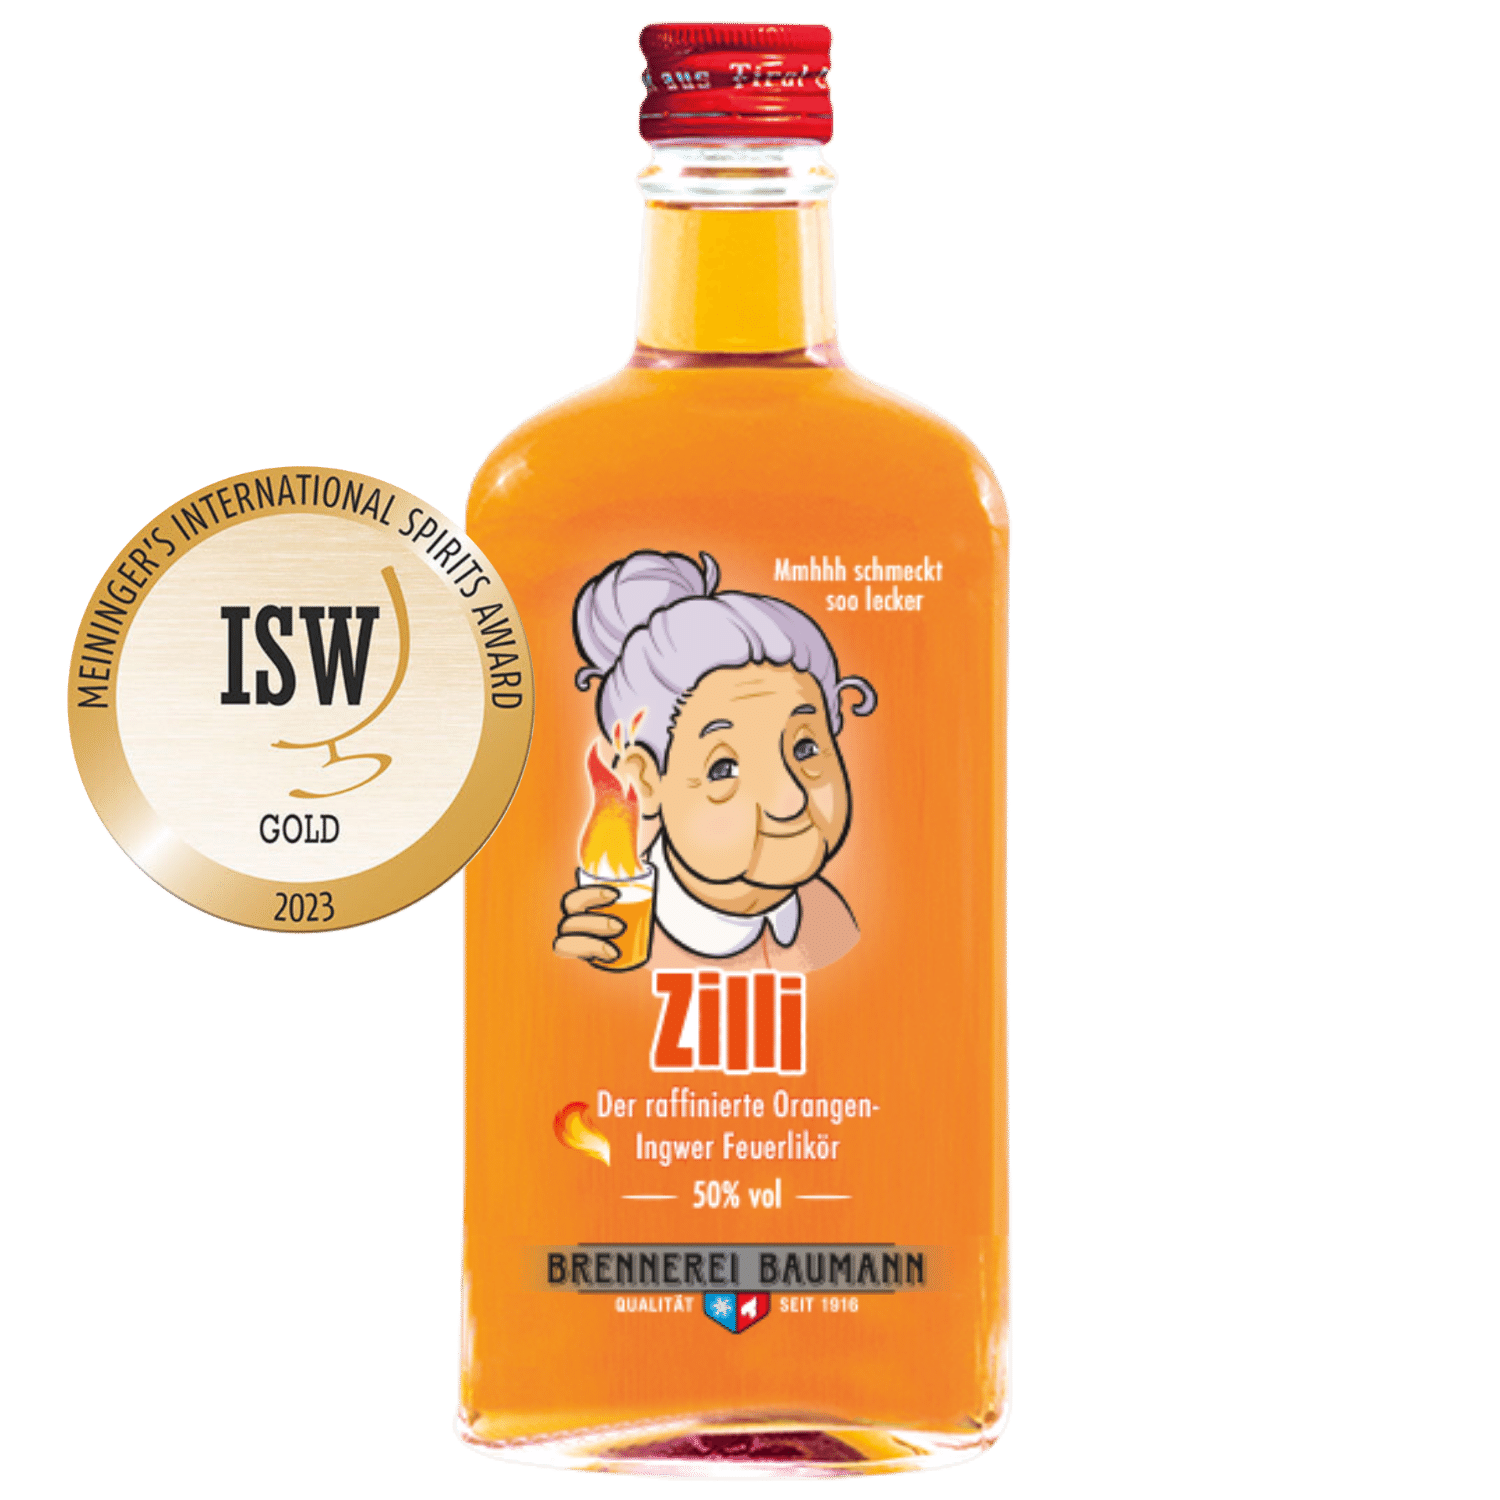 Gold award-winning Zilli fire liqueur from the Tyrolean distillery Baumann in a noble bottle.